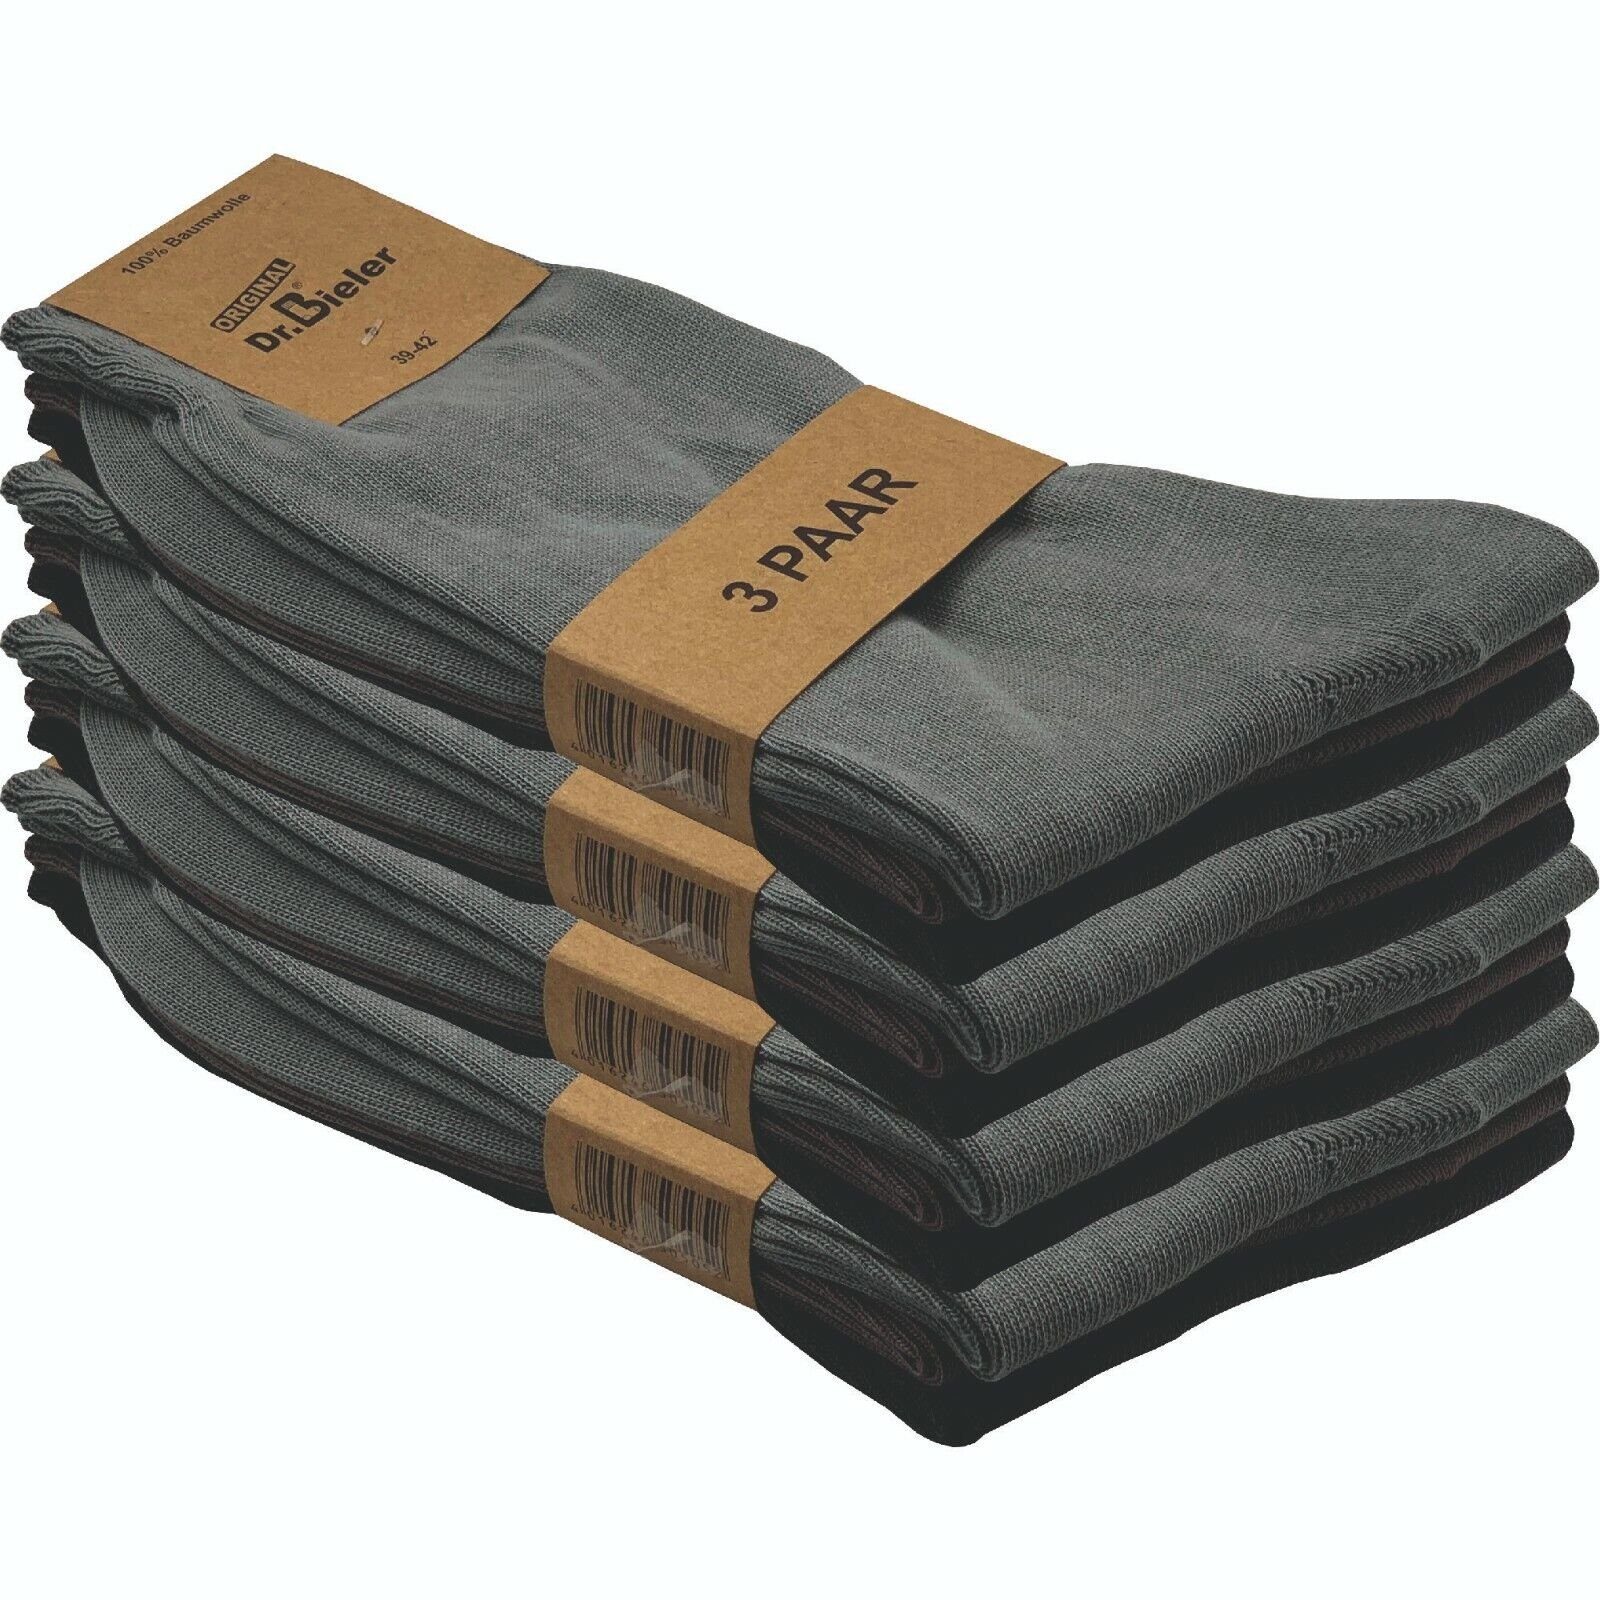 GAWILO Basicsocken für Herren aus 100% Baumwolle - ohne Gummi - ohne drückende Naht (12 Paar) in schwarz, weiß & blau - für Preisbewusste in ansprechender Qualität grautöne